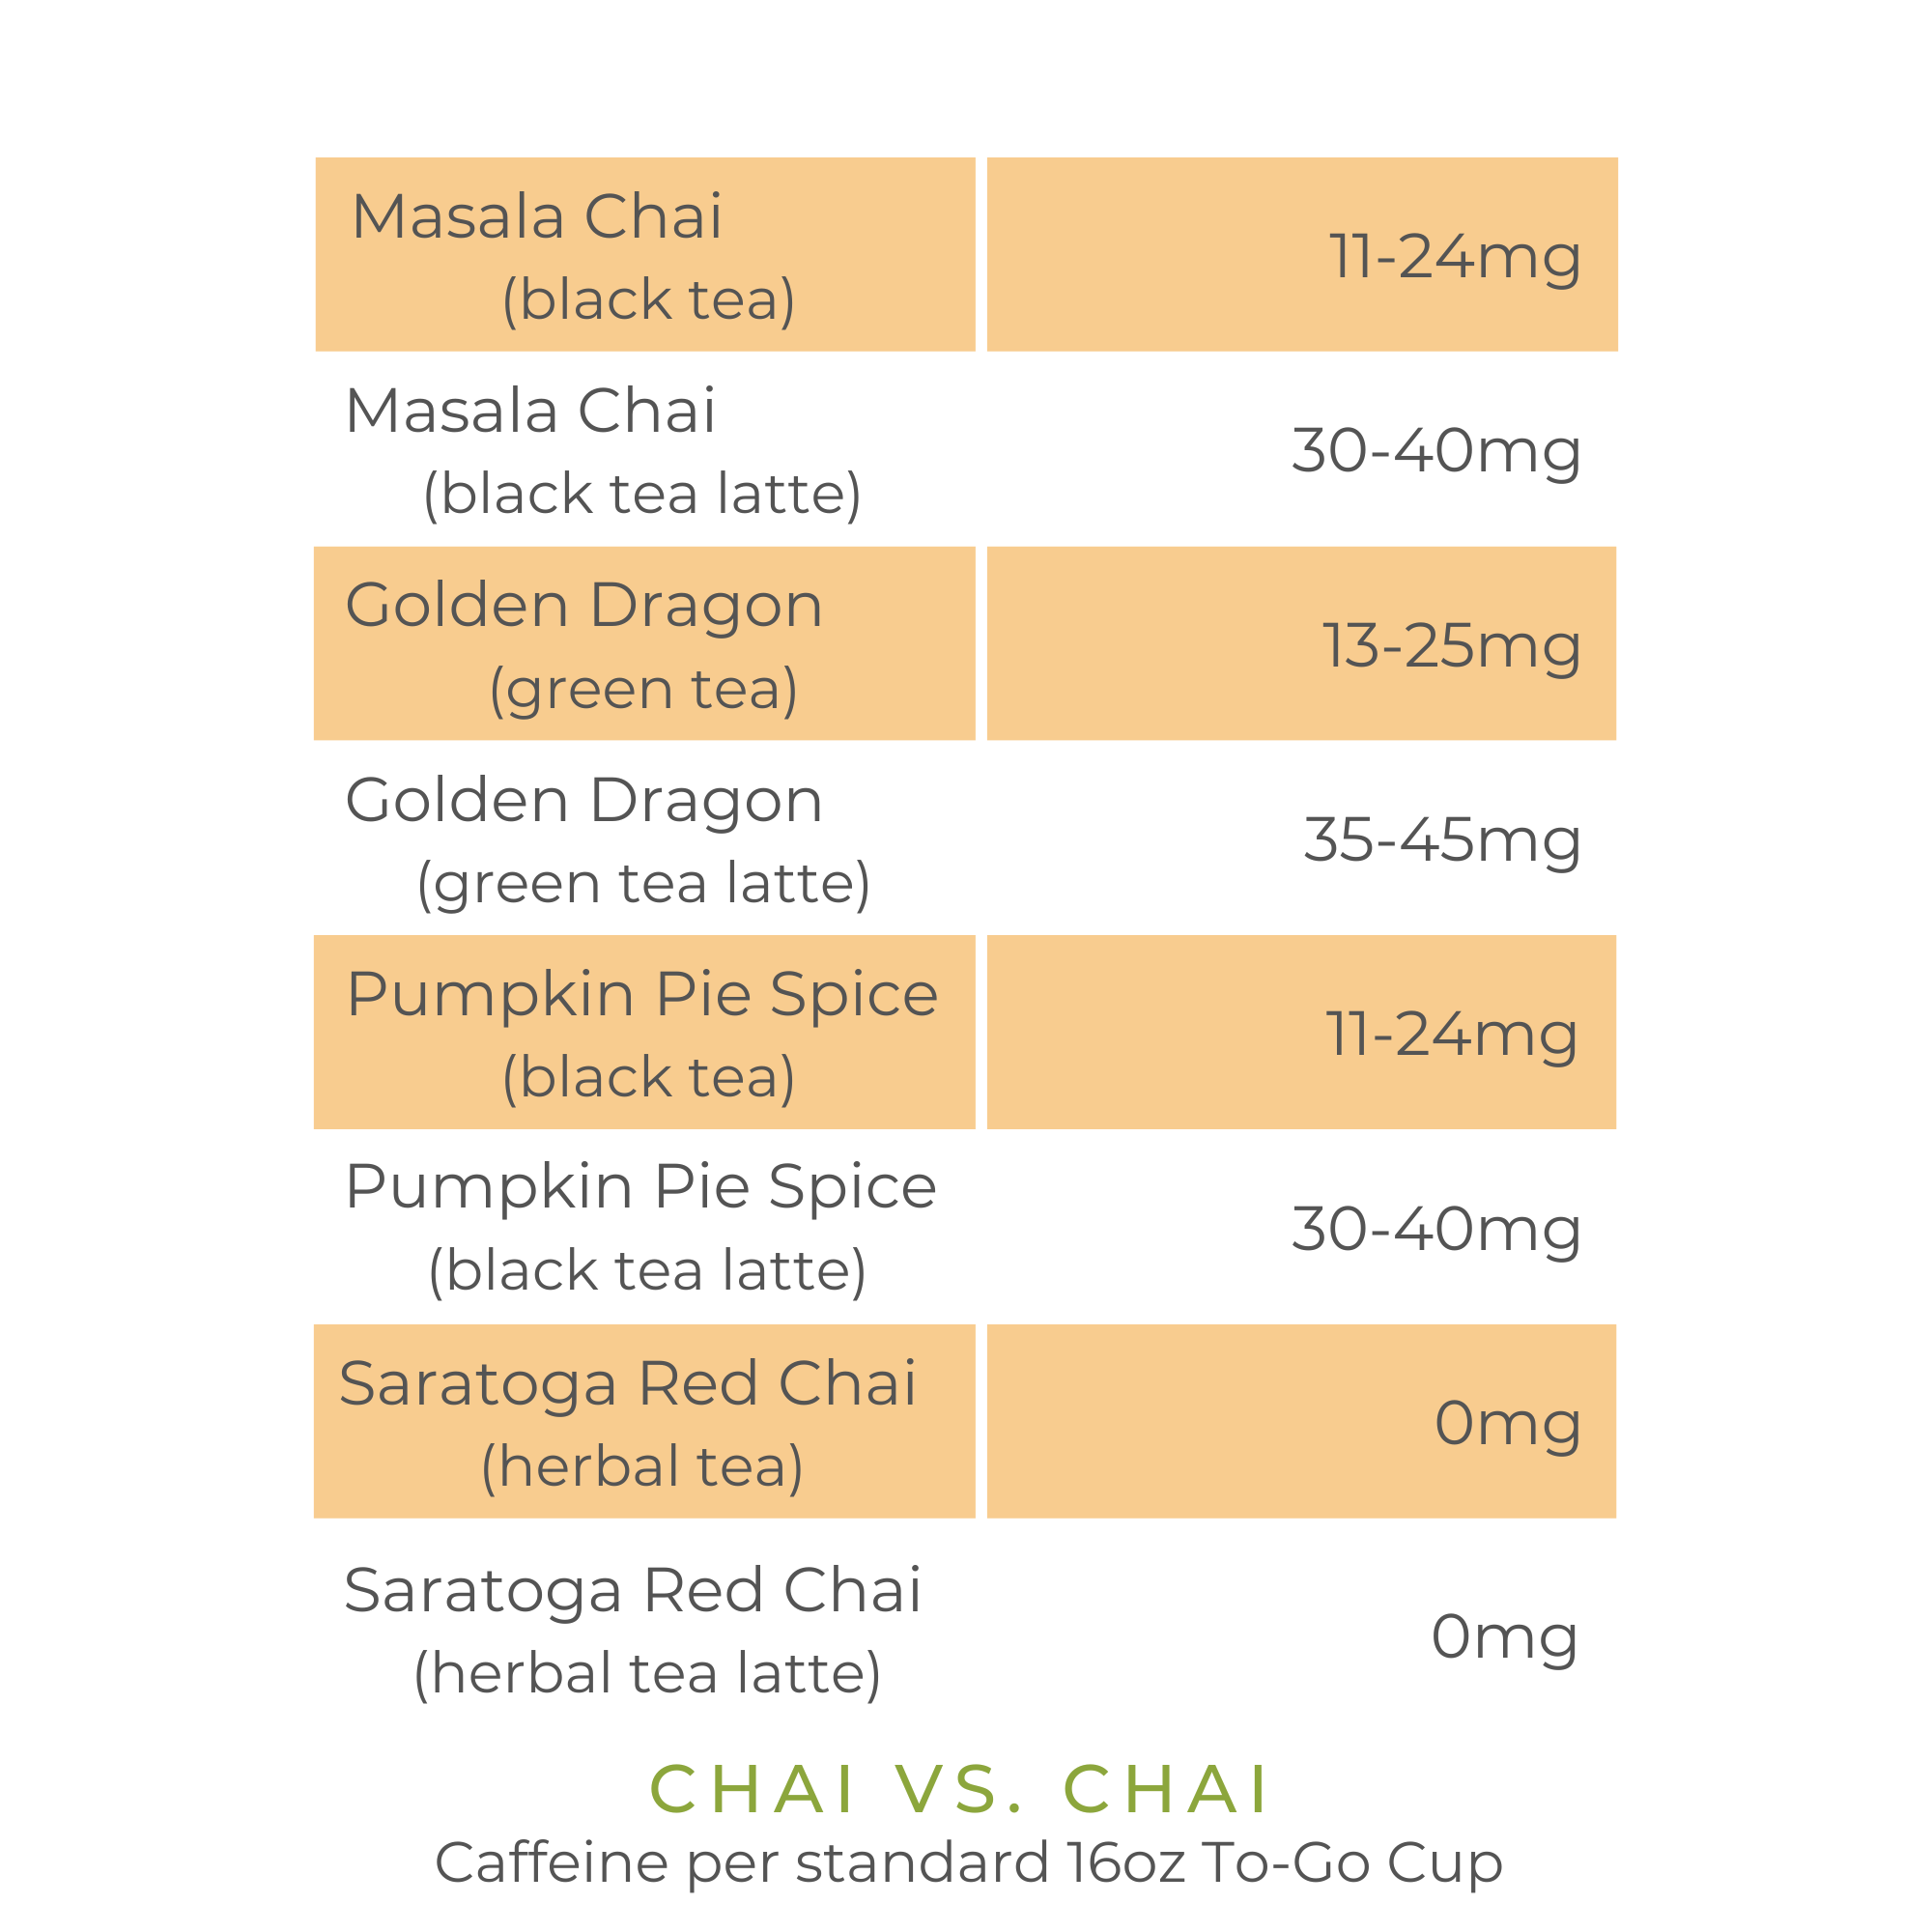 Caffeine content in chai. Masala Chai (black tea) has 11-24 mg caffeine. Masala chai (black tea latte) has 30-40 mg caffeine. Golden Dragon green tea chai has 12-25 mg caffeine. Golden Dragon green tea latte has 35-45 mg caffeine. Pumpkin Pie Spice black tea chai has 11-24 mg caffeine. Pumpkin Pie Spice black tea chai latte has 30-40 mg caffeine. Saratoga Red Chai herbal tea and herbal tea latte has 0 mg caffeine. 